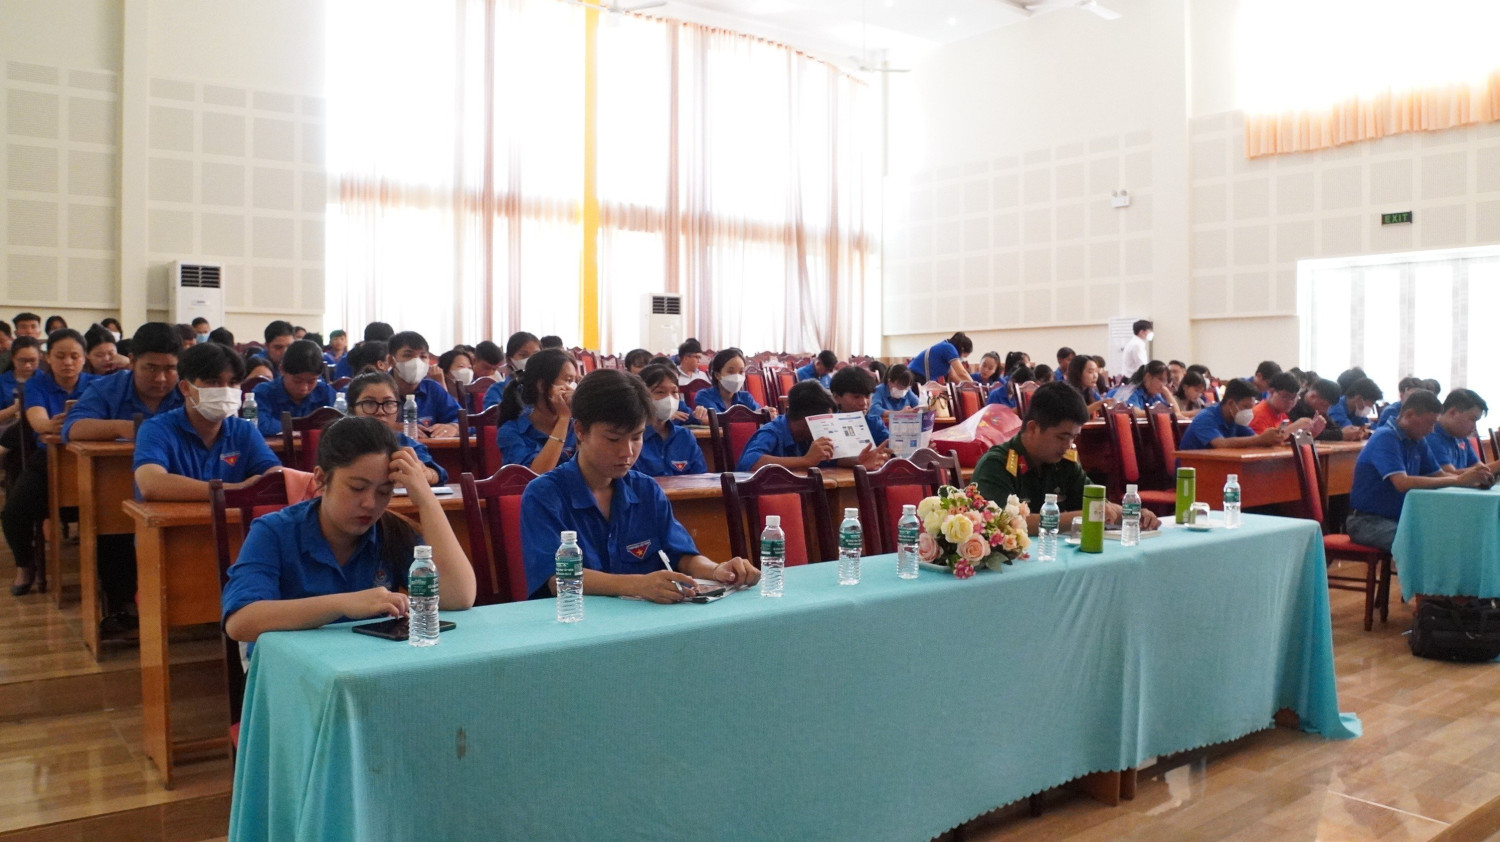 Huyện đoàn Tân Biên phối hợp cùng VNPT Tây Ninh tổ chức Hội nghị tập huấn, triển khai cung cấp chữ ký số miễn phí cho đoàn viên, thanh niên khi sử dụng dịch vụ công trực tuyến và thanh toán điện tử